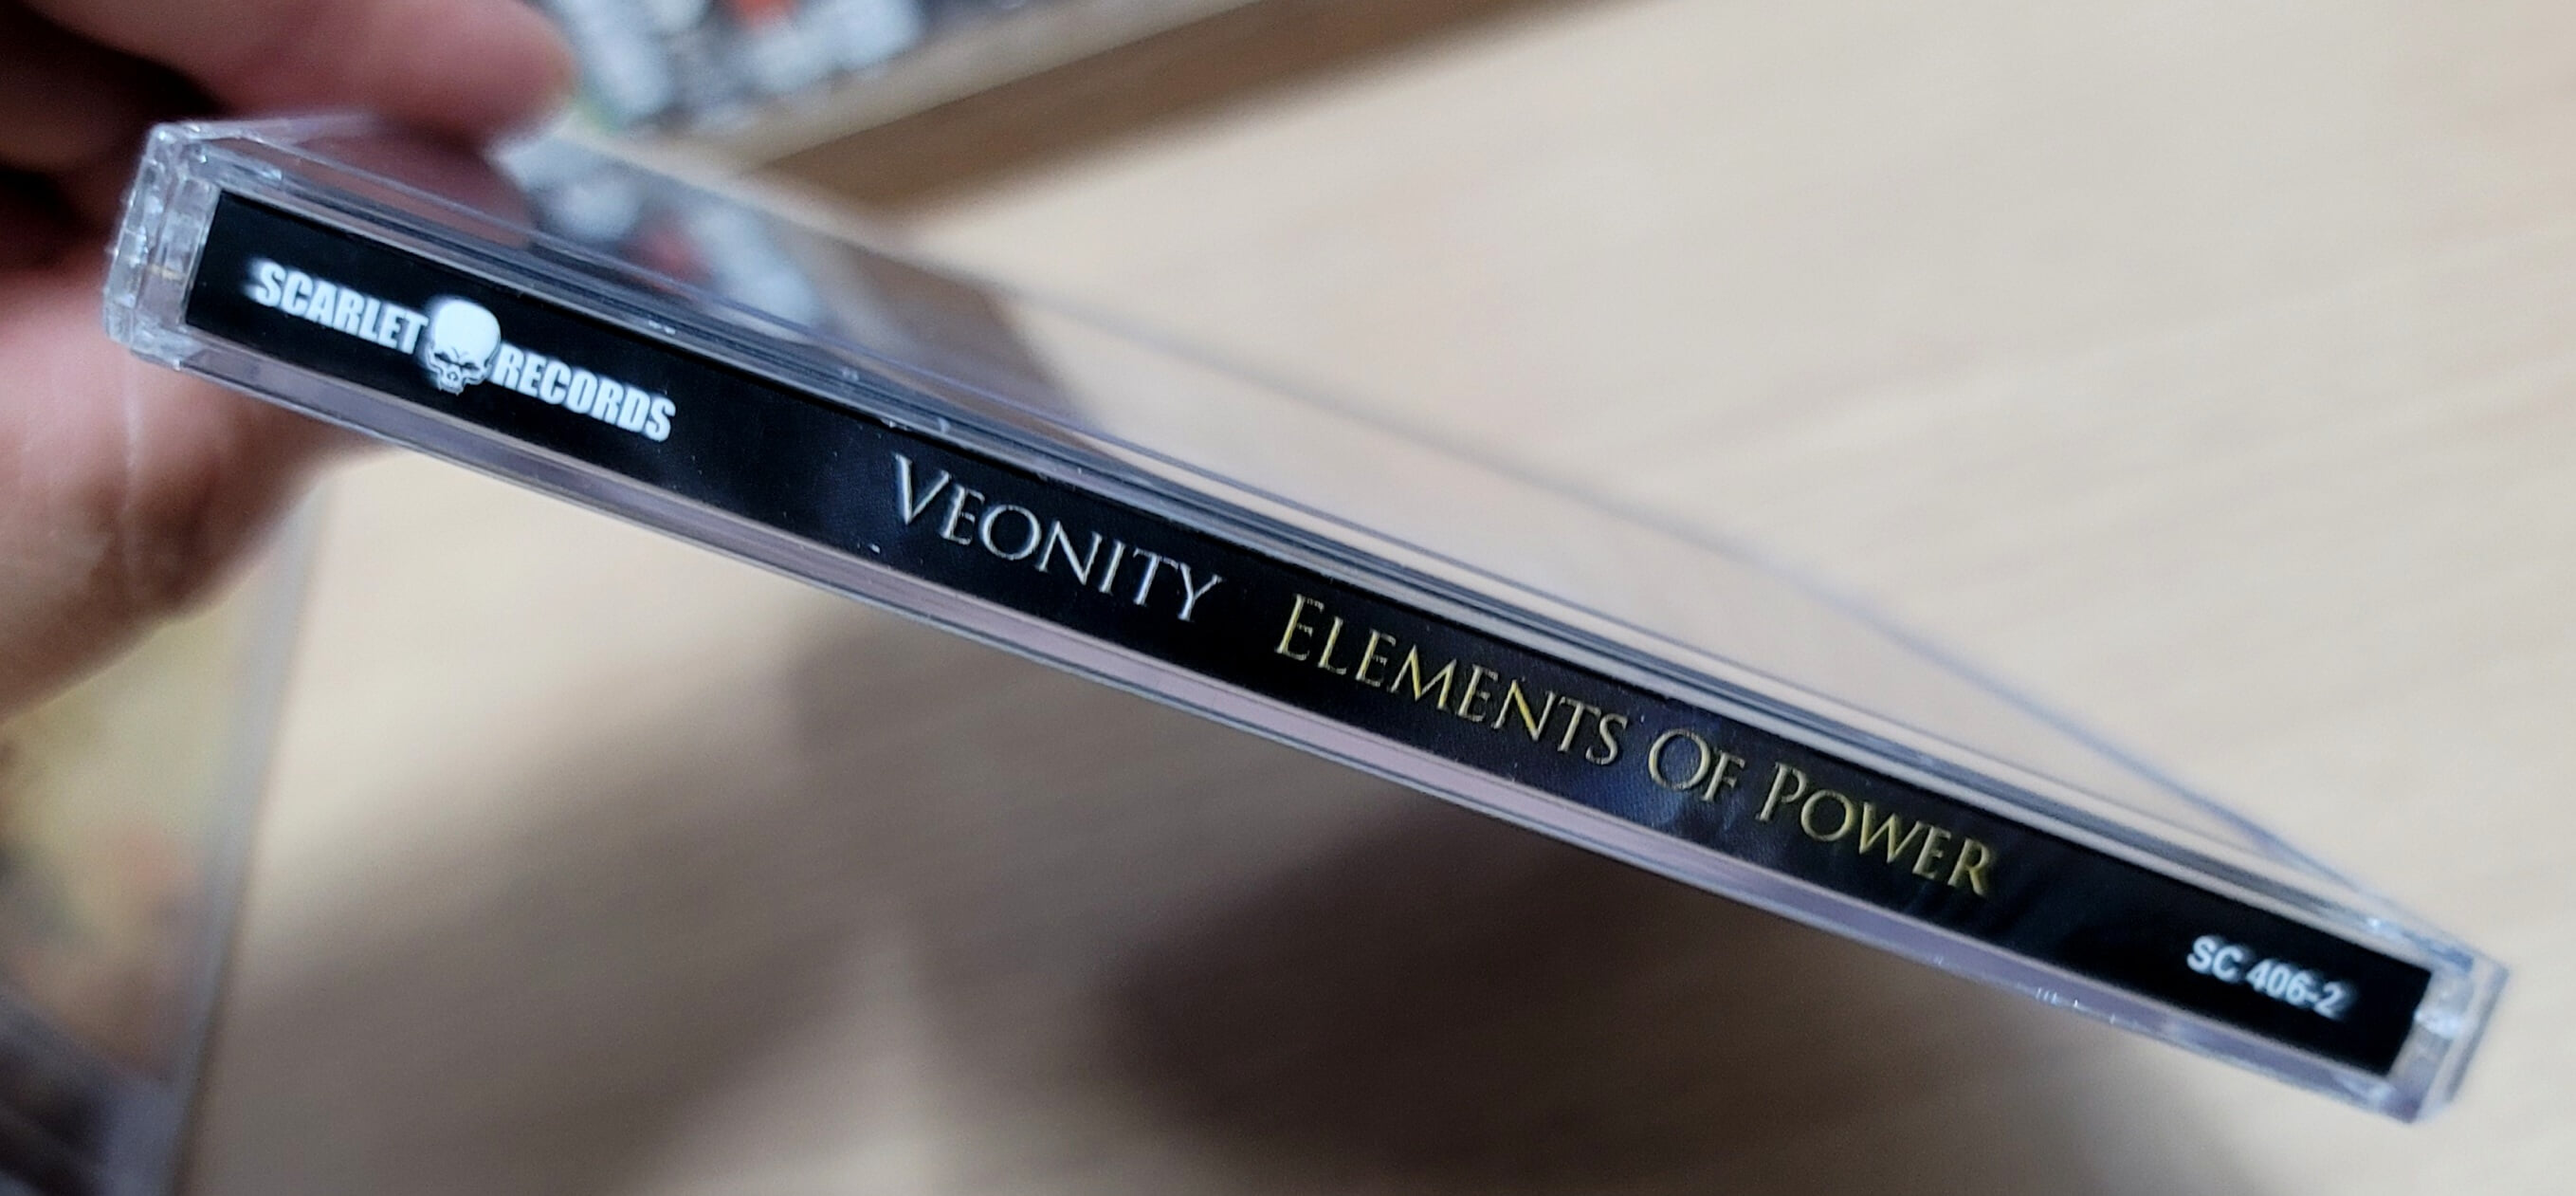 (수입) VEONITY - Elements Of Power